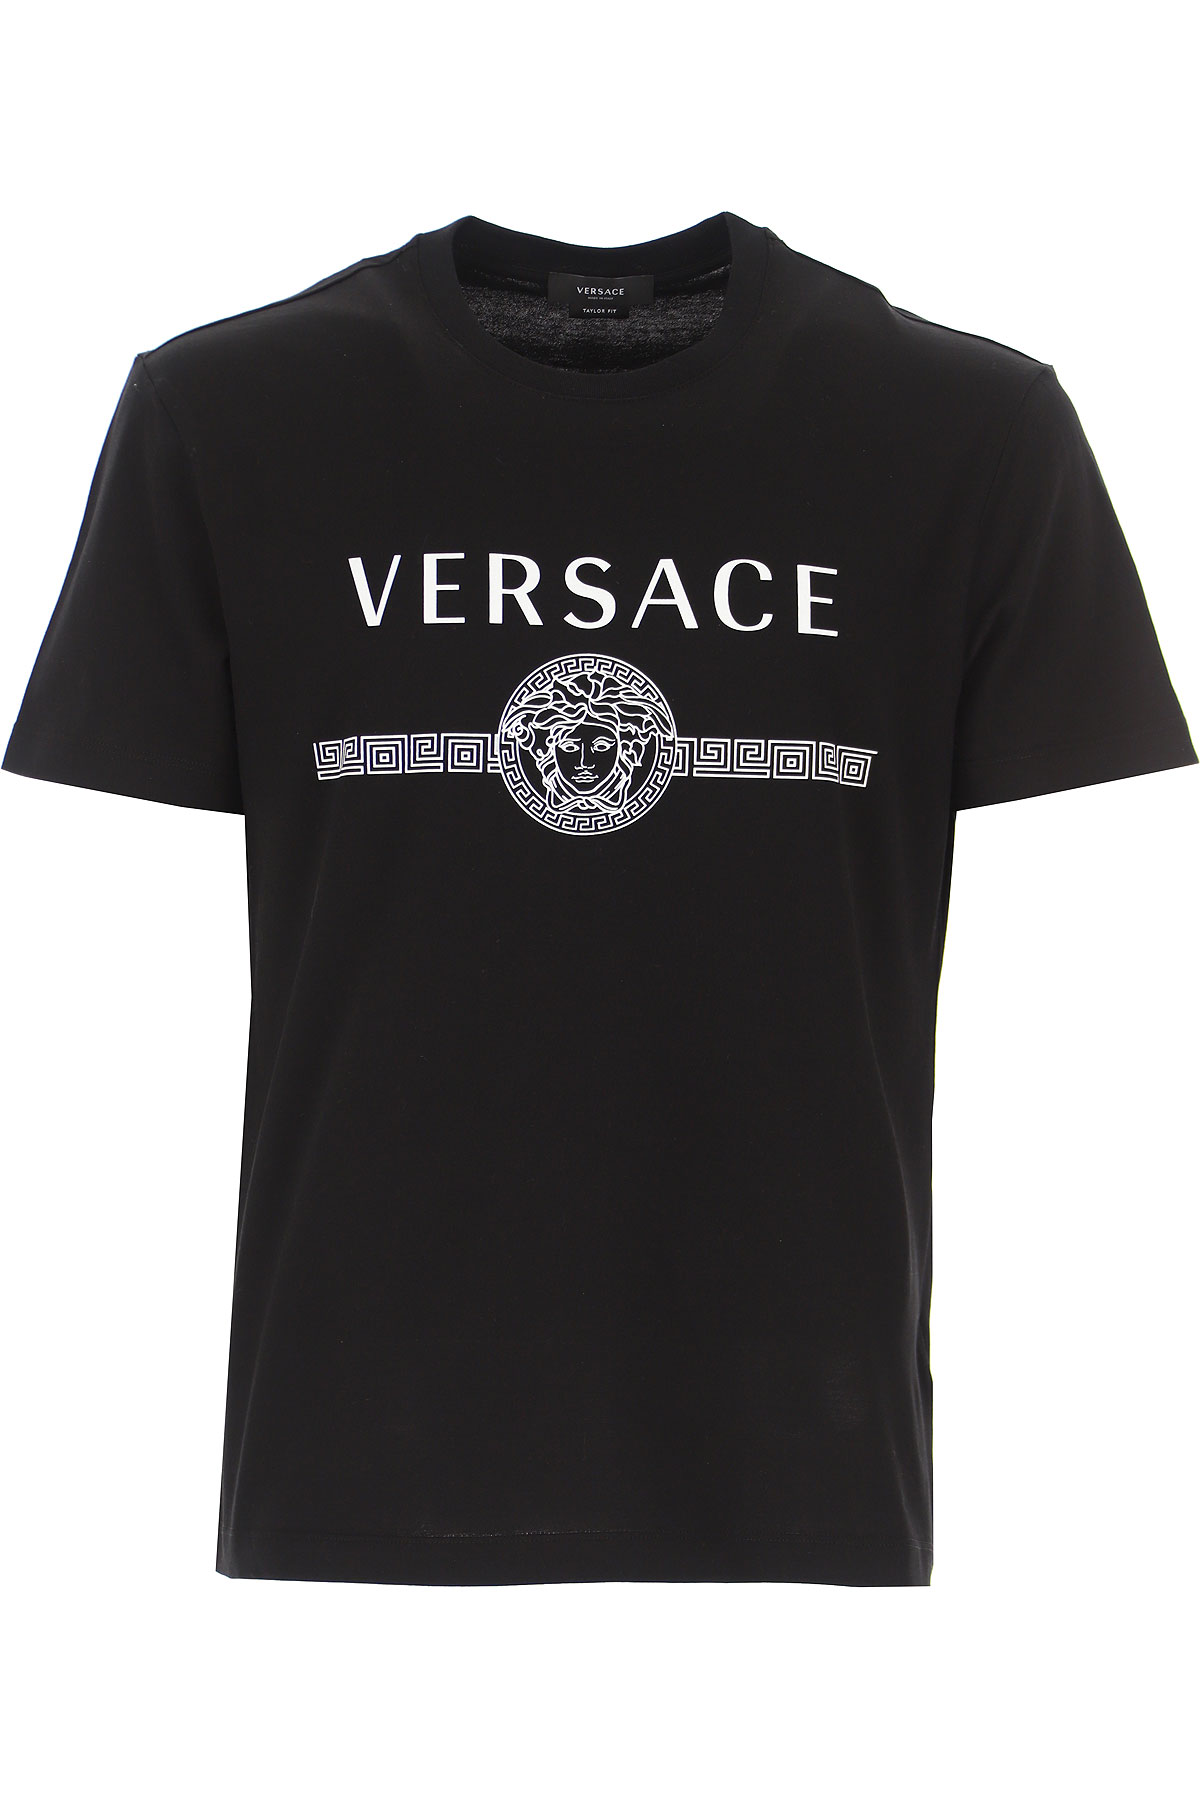 versace t shirt mens cheap